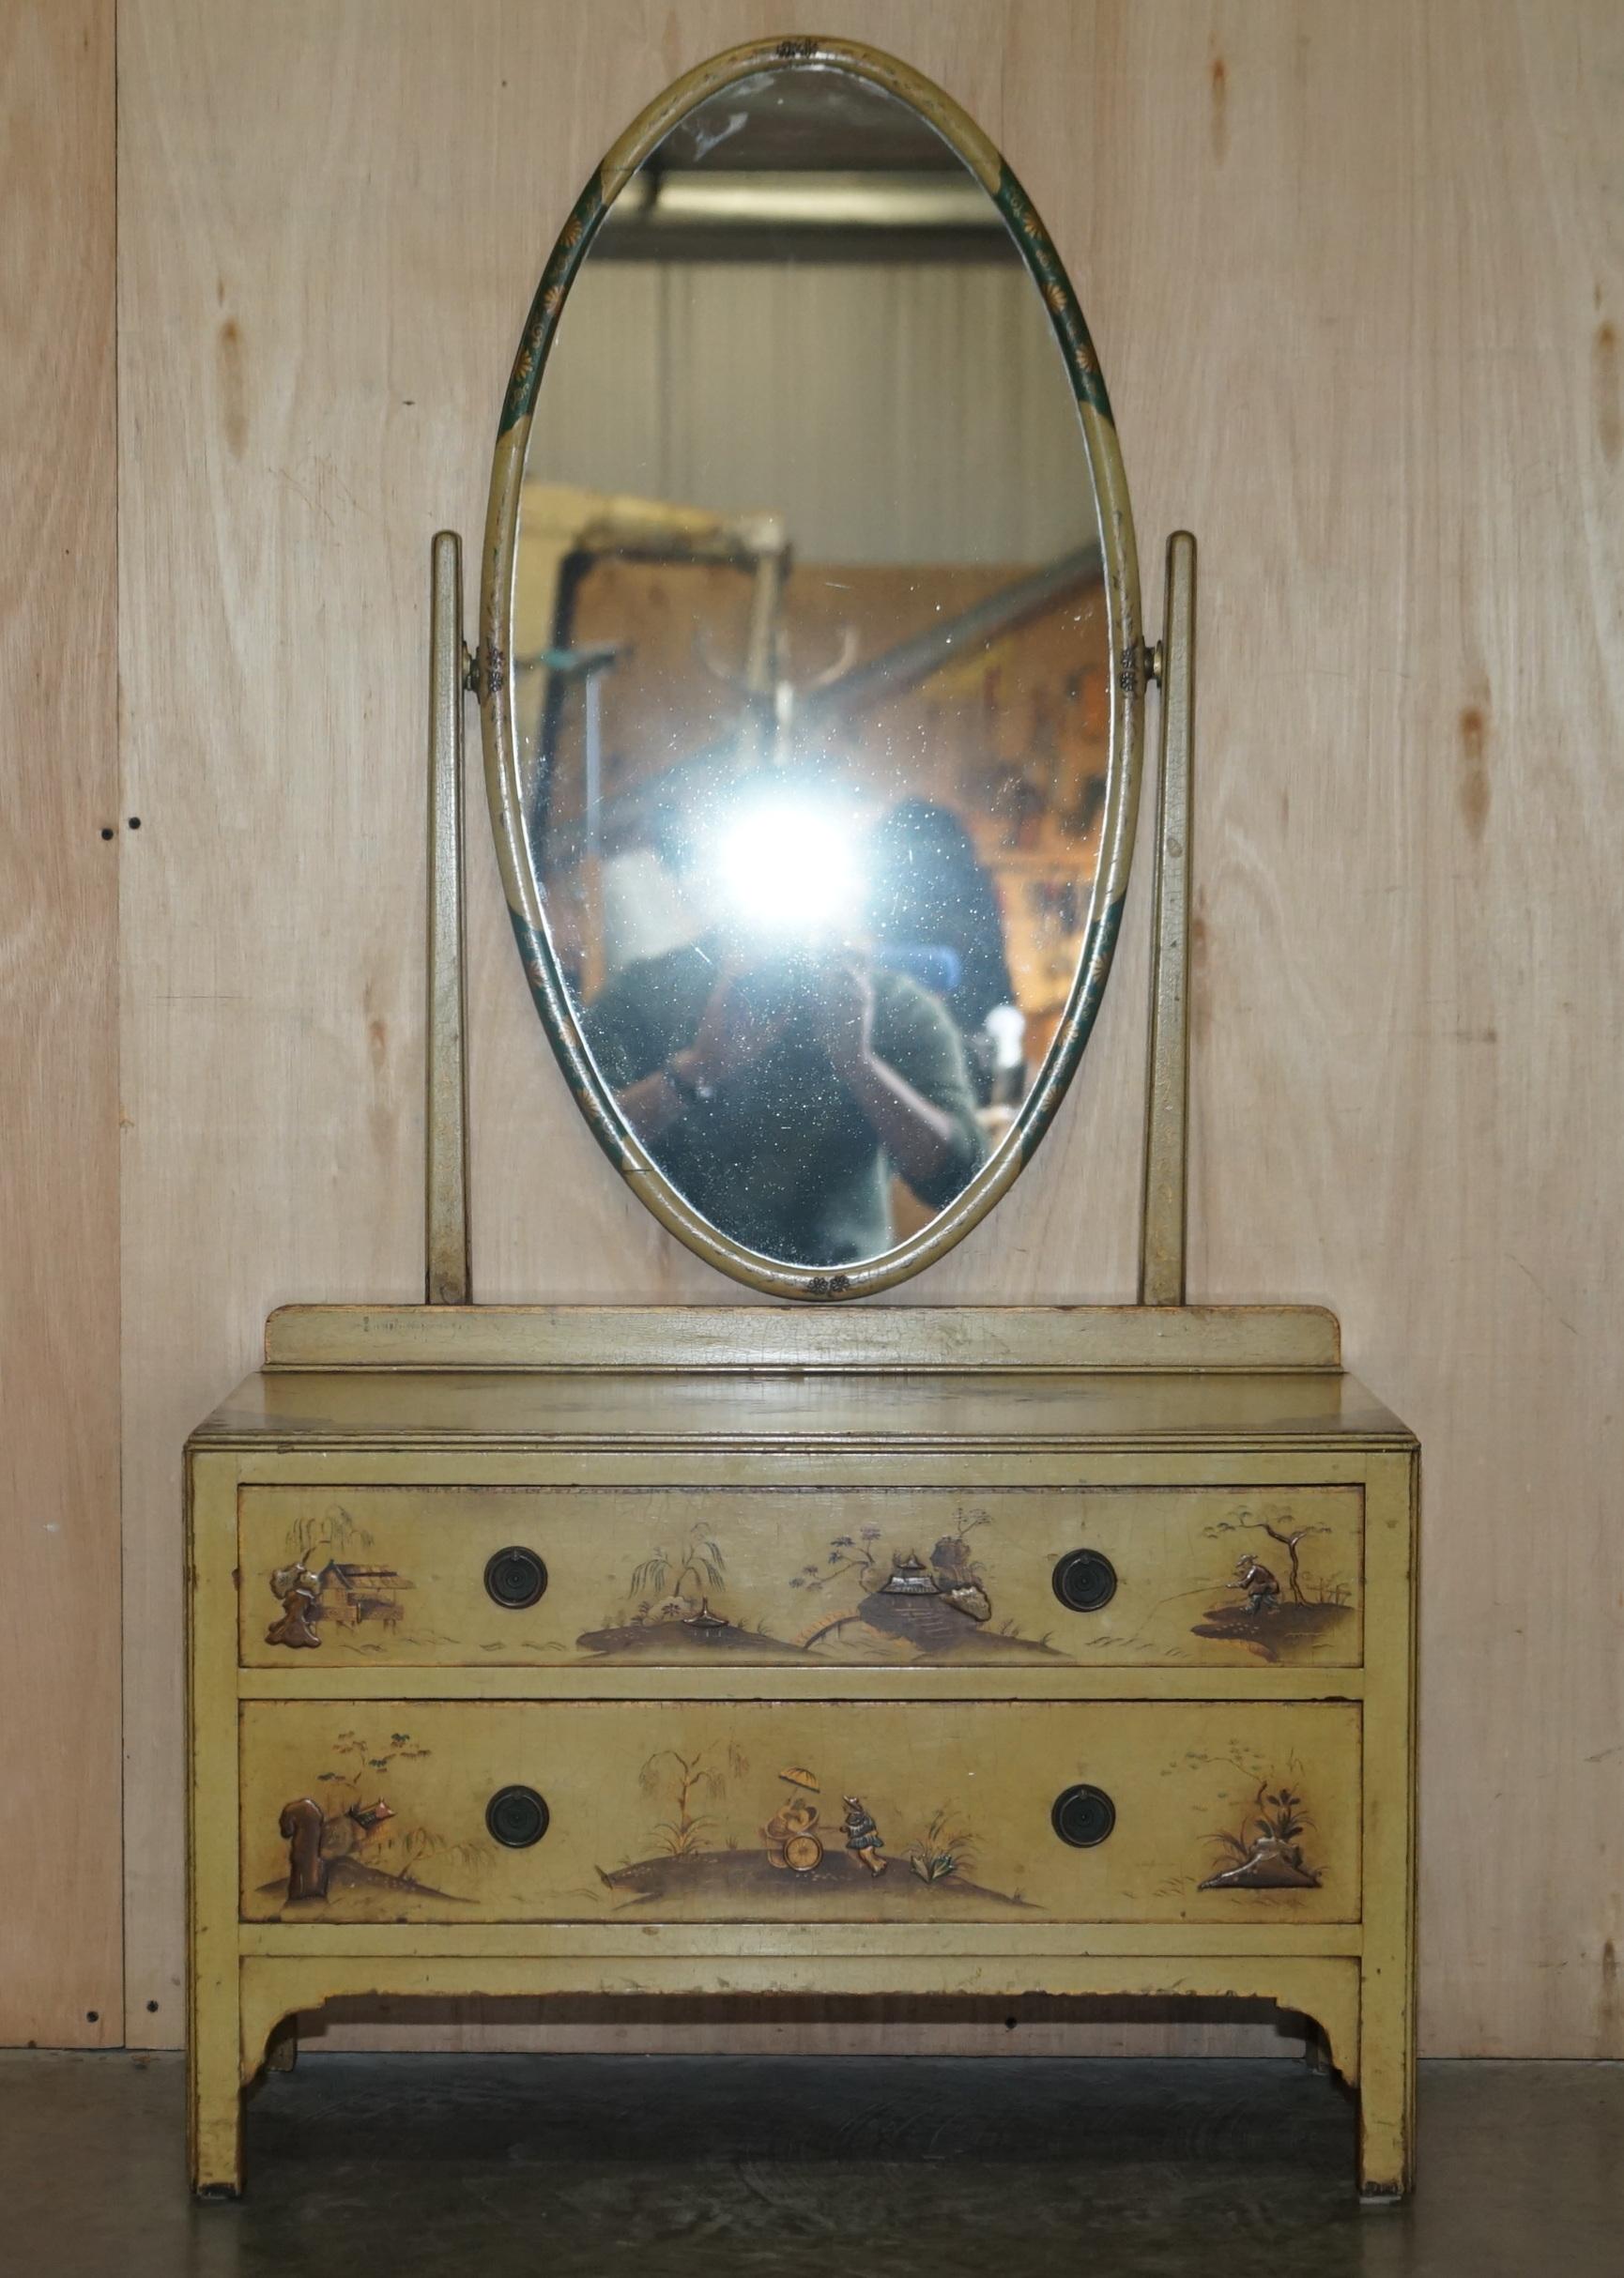 Wir freuen uns, diese atemberaubende originale chinesische handbemalte Pagodenkommode aus Eichenholz mit Spiegel im Stil eines edwardianischen Frisiertisches zum Verkauf anzubieten.

Ein sehr gut aussehendes und hochdekoratives Stück. Er basiert